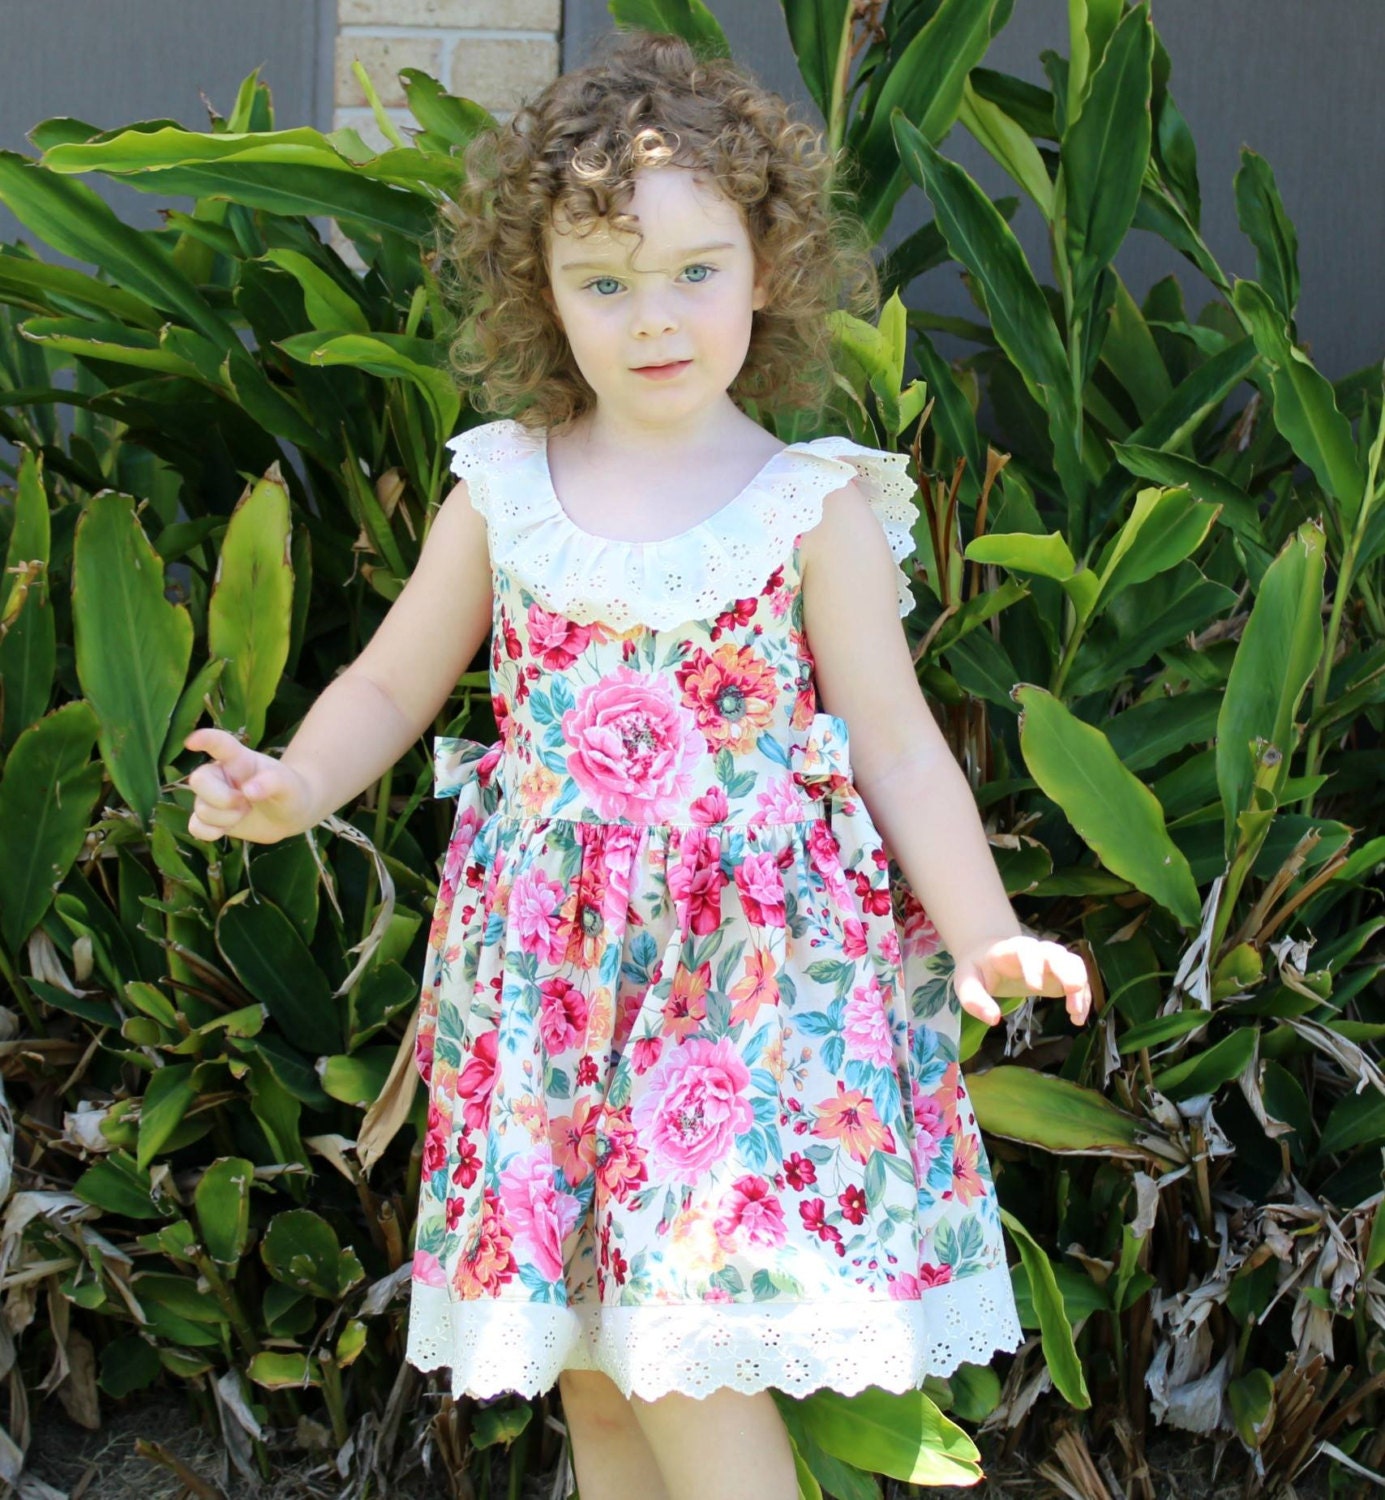 NEW RELEASE The Hattie Garden Dress PDF Pattern Size 2 3 4 5 6 7 8 from ...